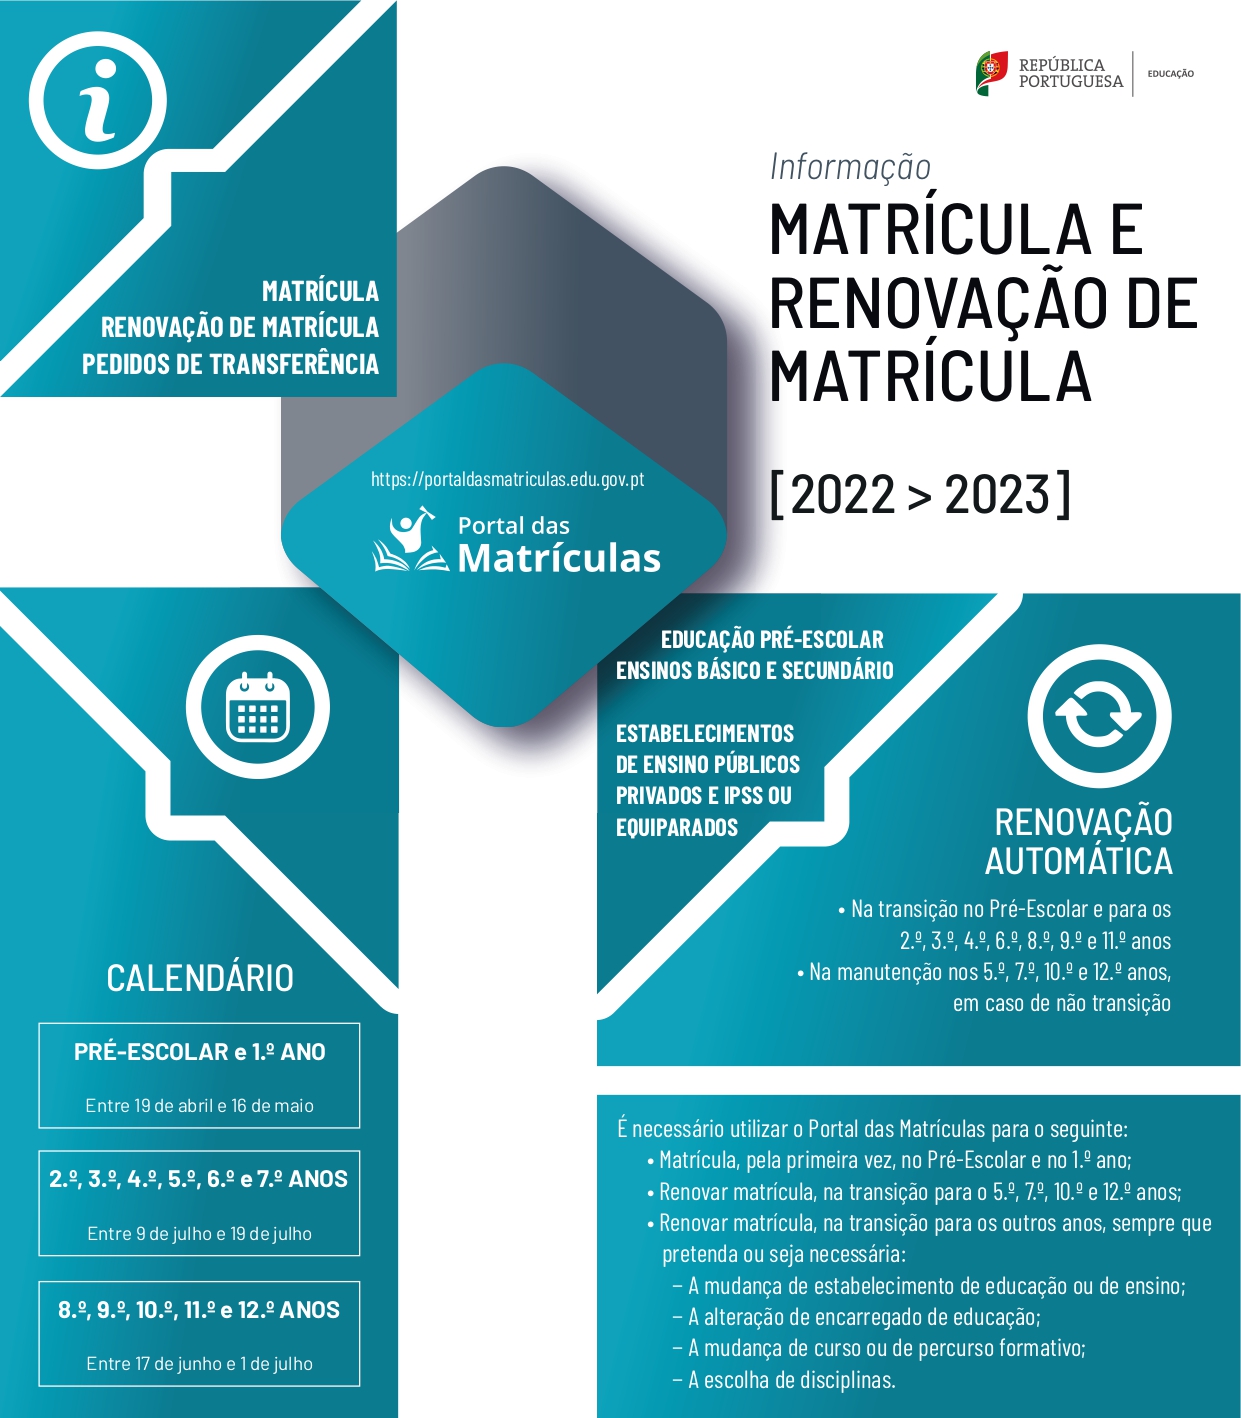 Matrícula e Renovação de Matrícula (2022 -2023)